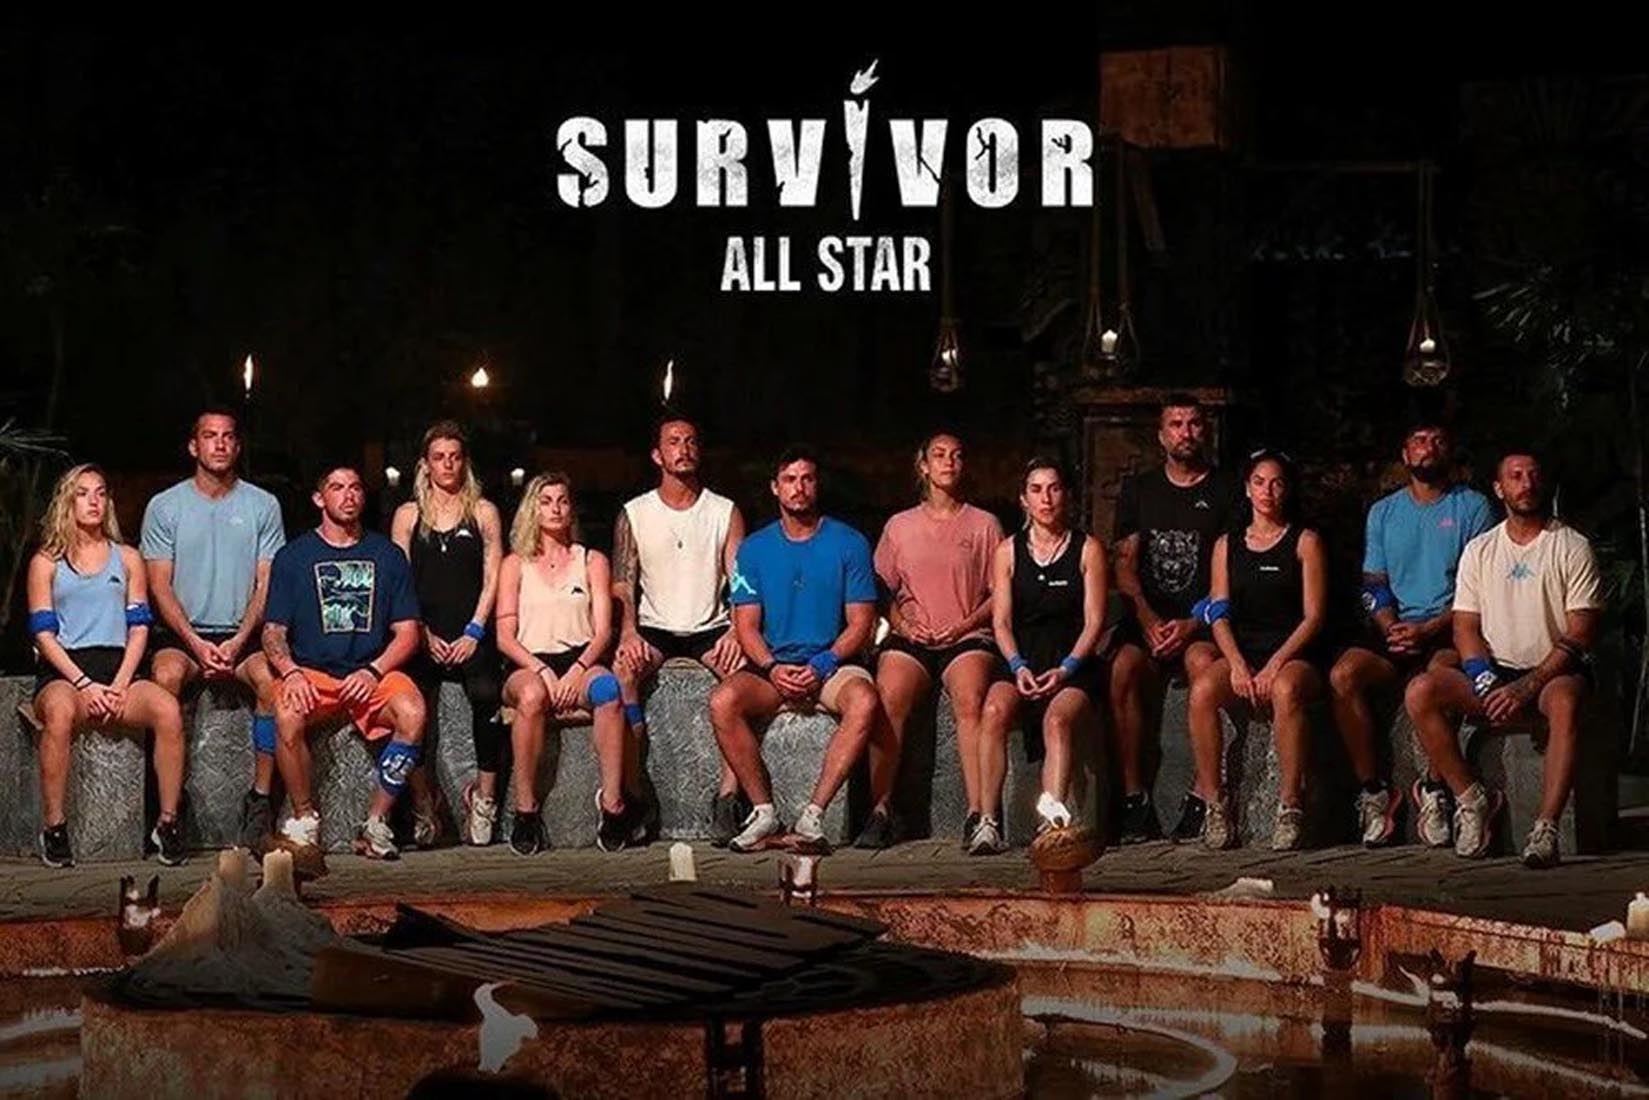 Survivor ödül oyunu kim kazandı 25 Şubat 2022 Cuma? Survivor 2022 All Star ödül oyununu hangi takım kazandı?